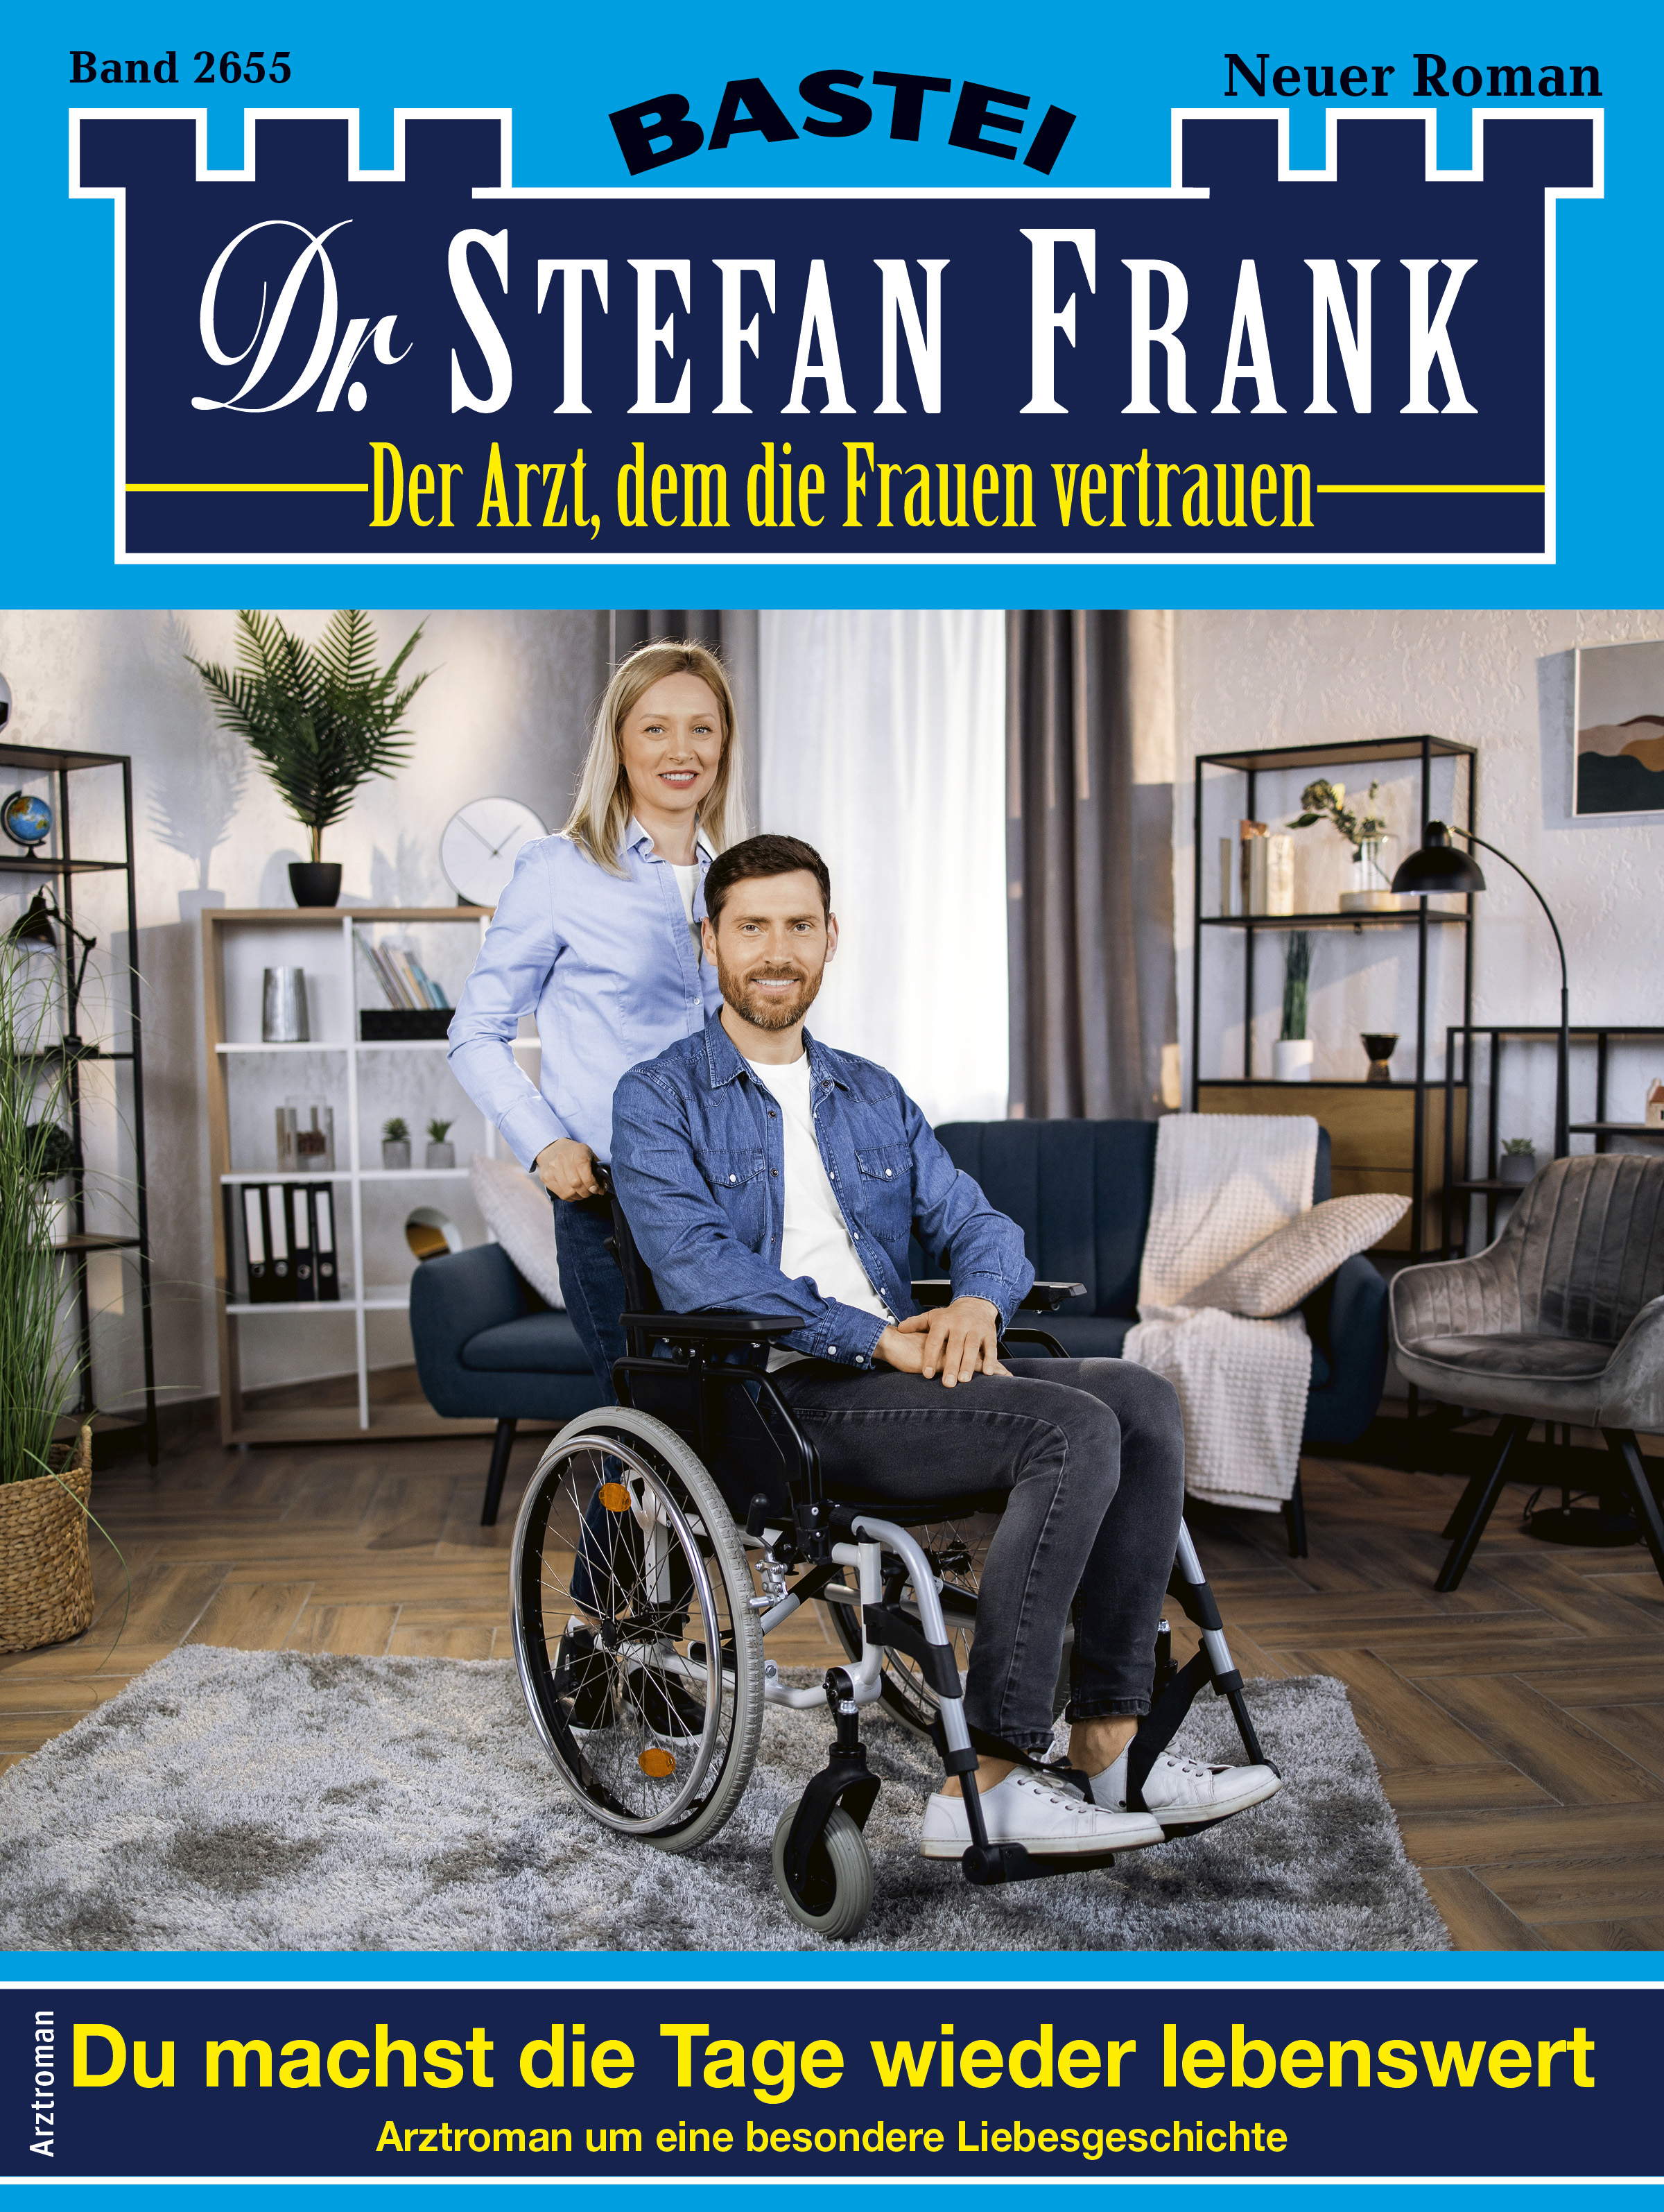 Dr. Stefan Frank 2655